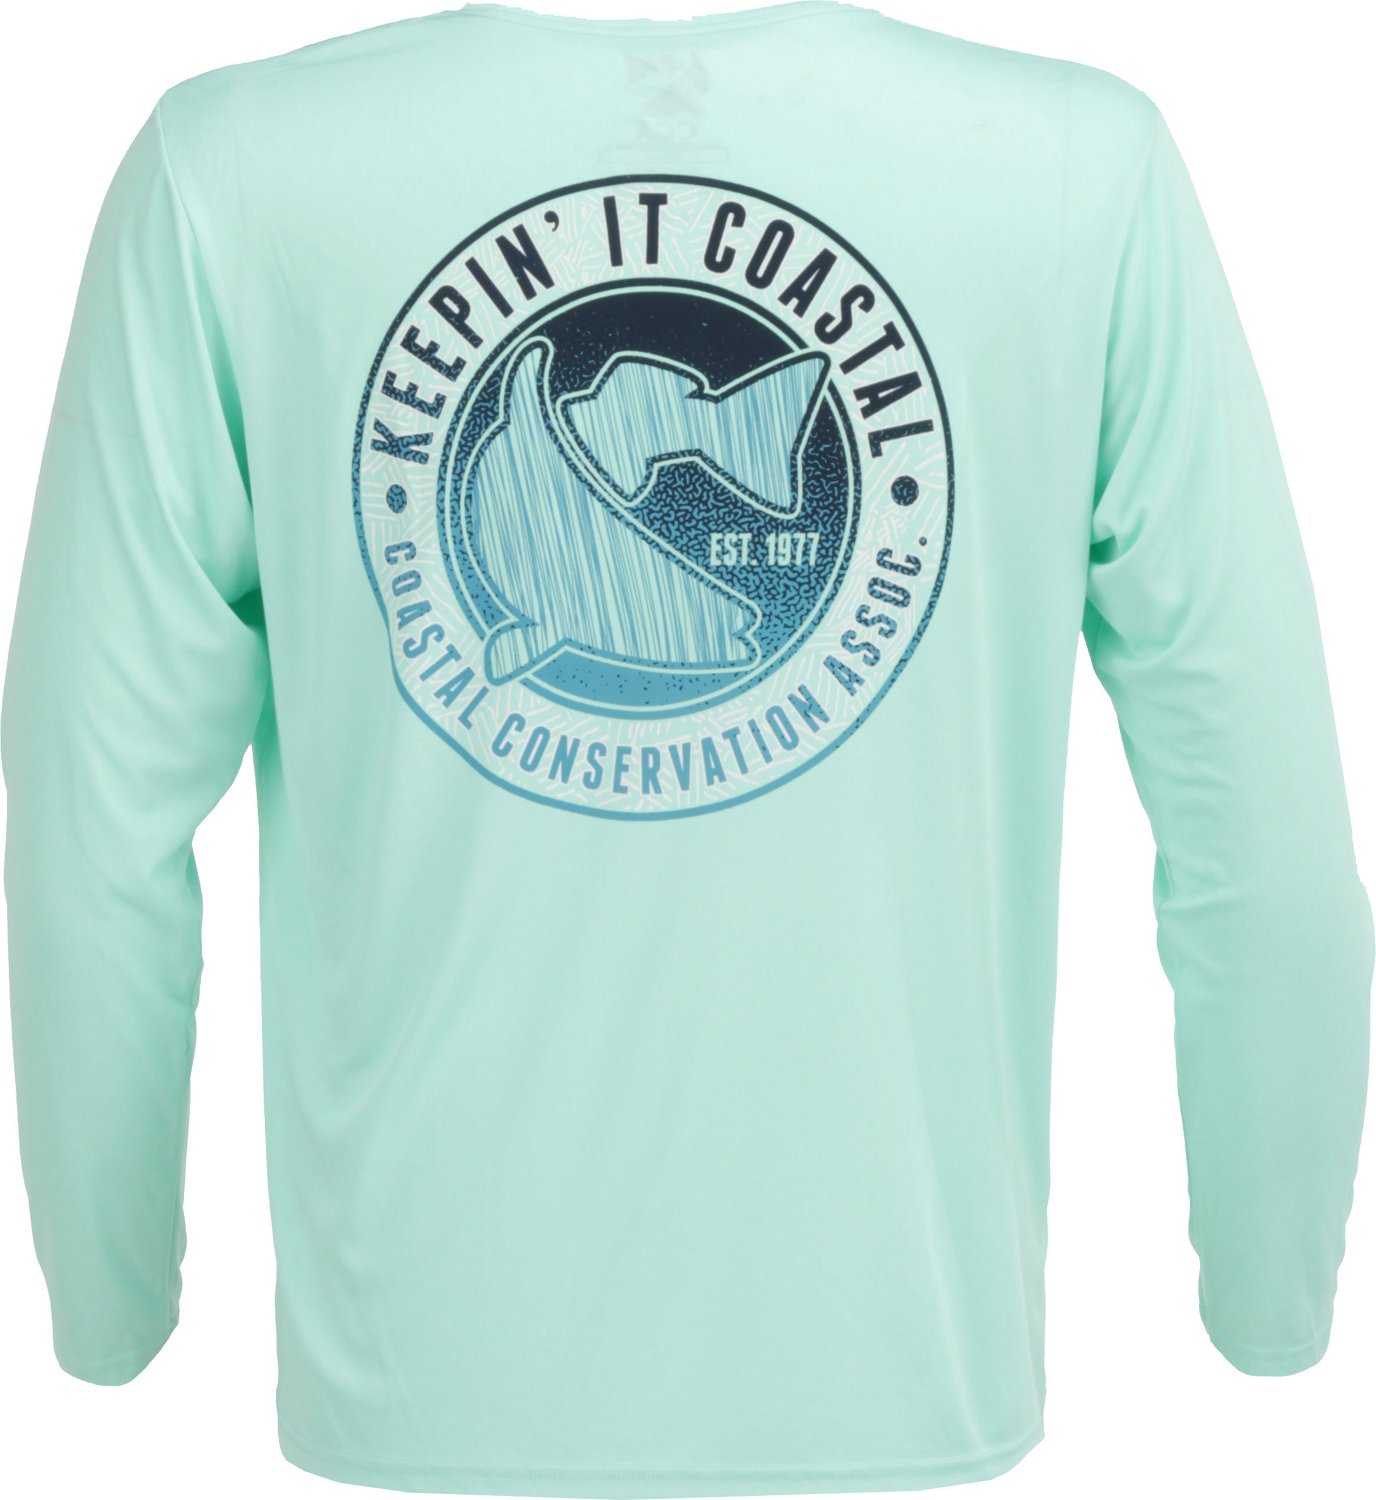 Fishing Shirts & T-Shirts | Men's and Women's Fishing Shirts